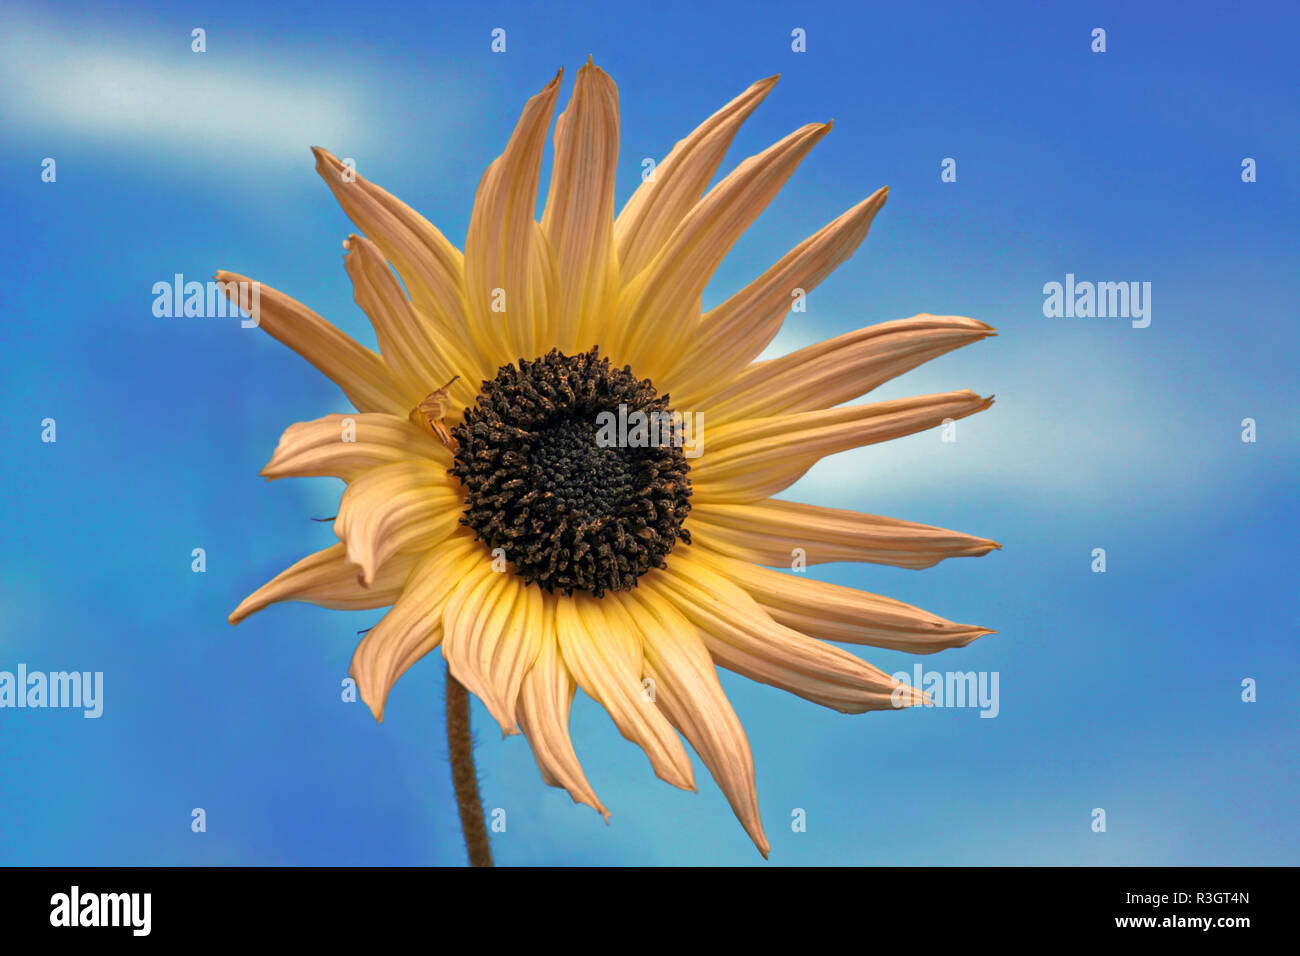 sunflower against a blue sky Stock Photo